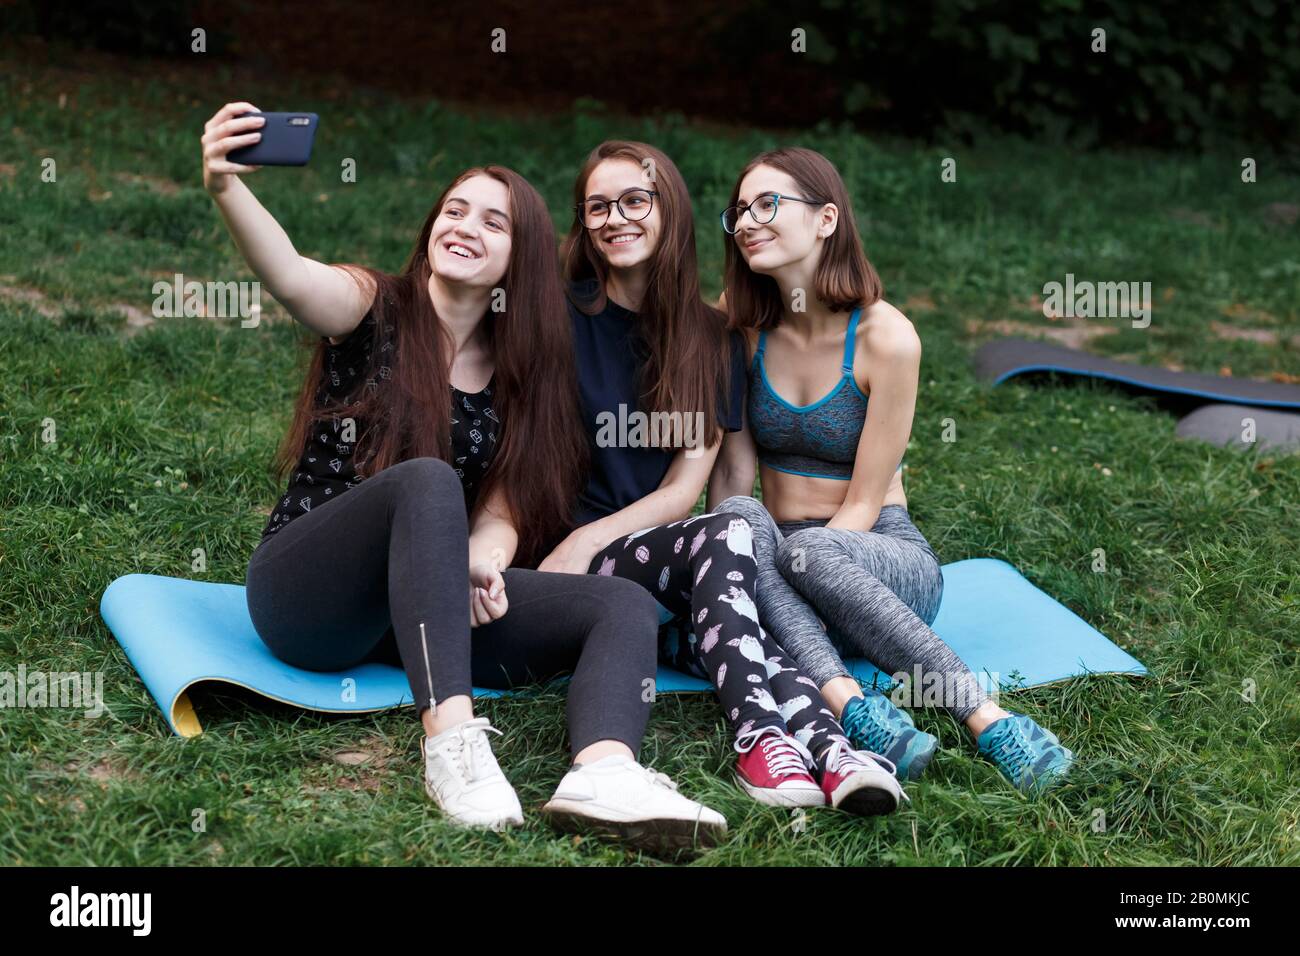 Drei Mädchen sitzen auf Yogamatte und machen Selfies im grünen Park Stockfoto